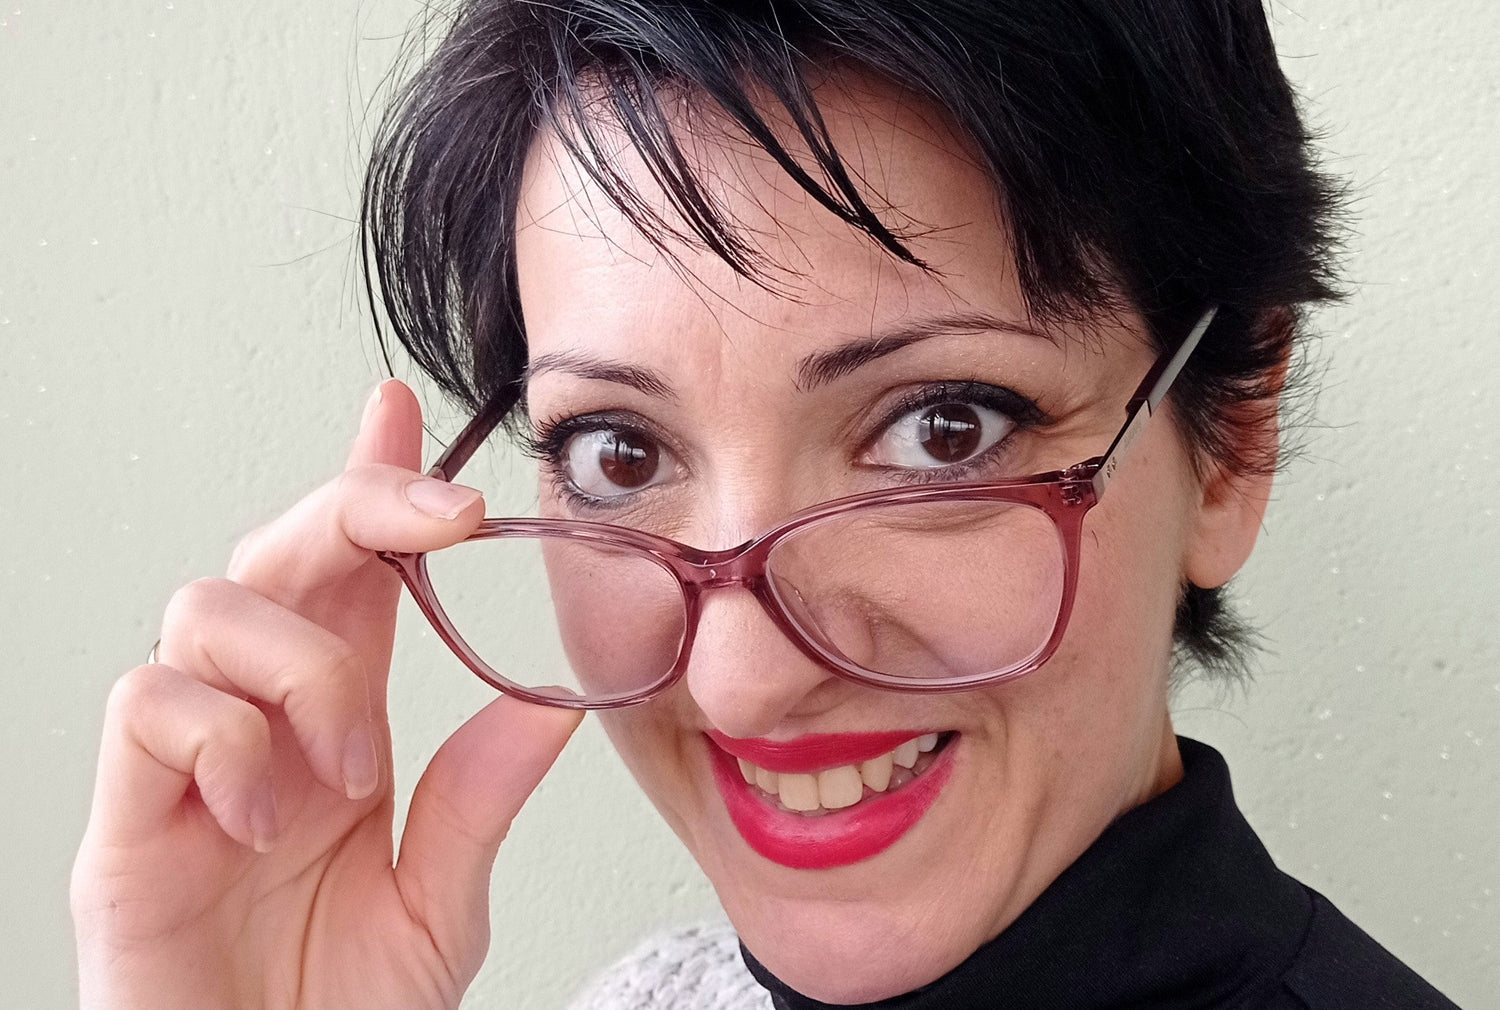 How can I hide my thick glasses? | KOALAEYE OPTICAL